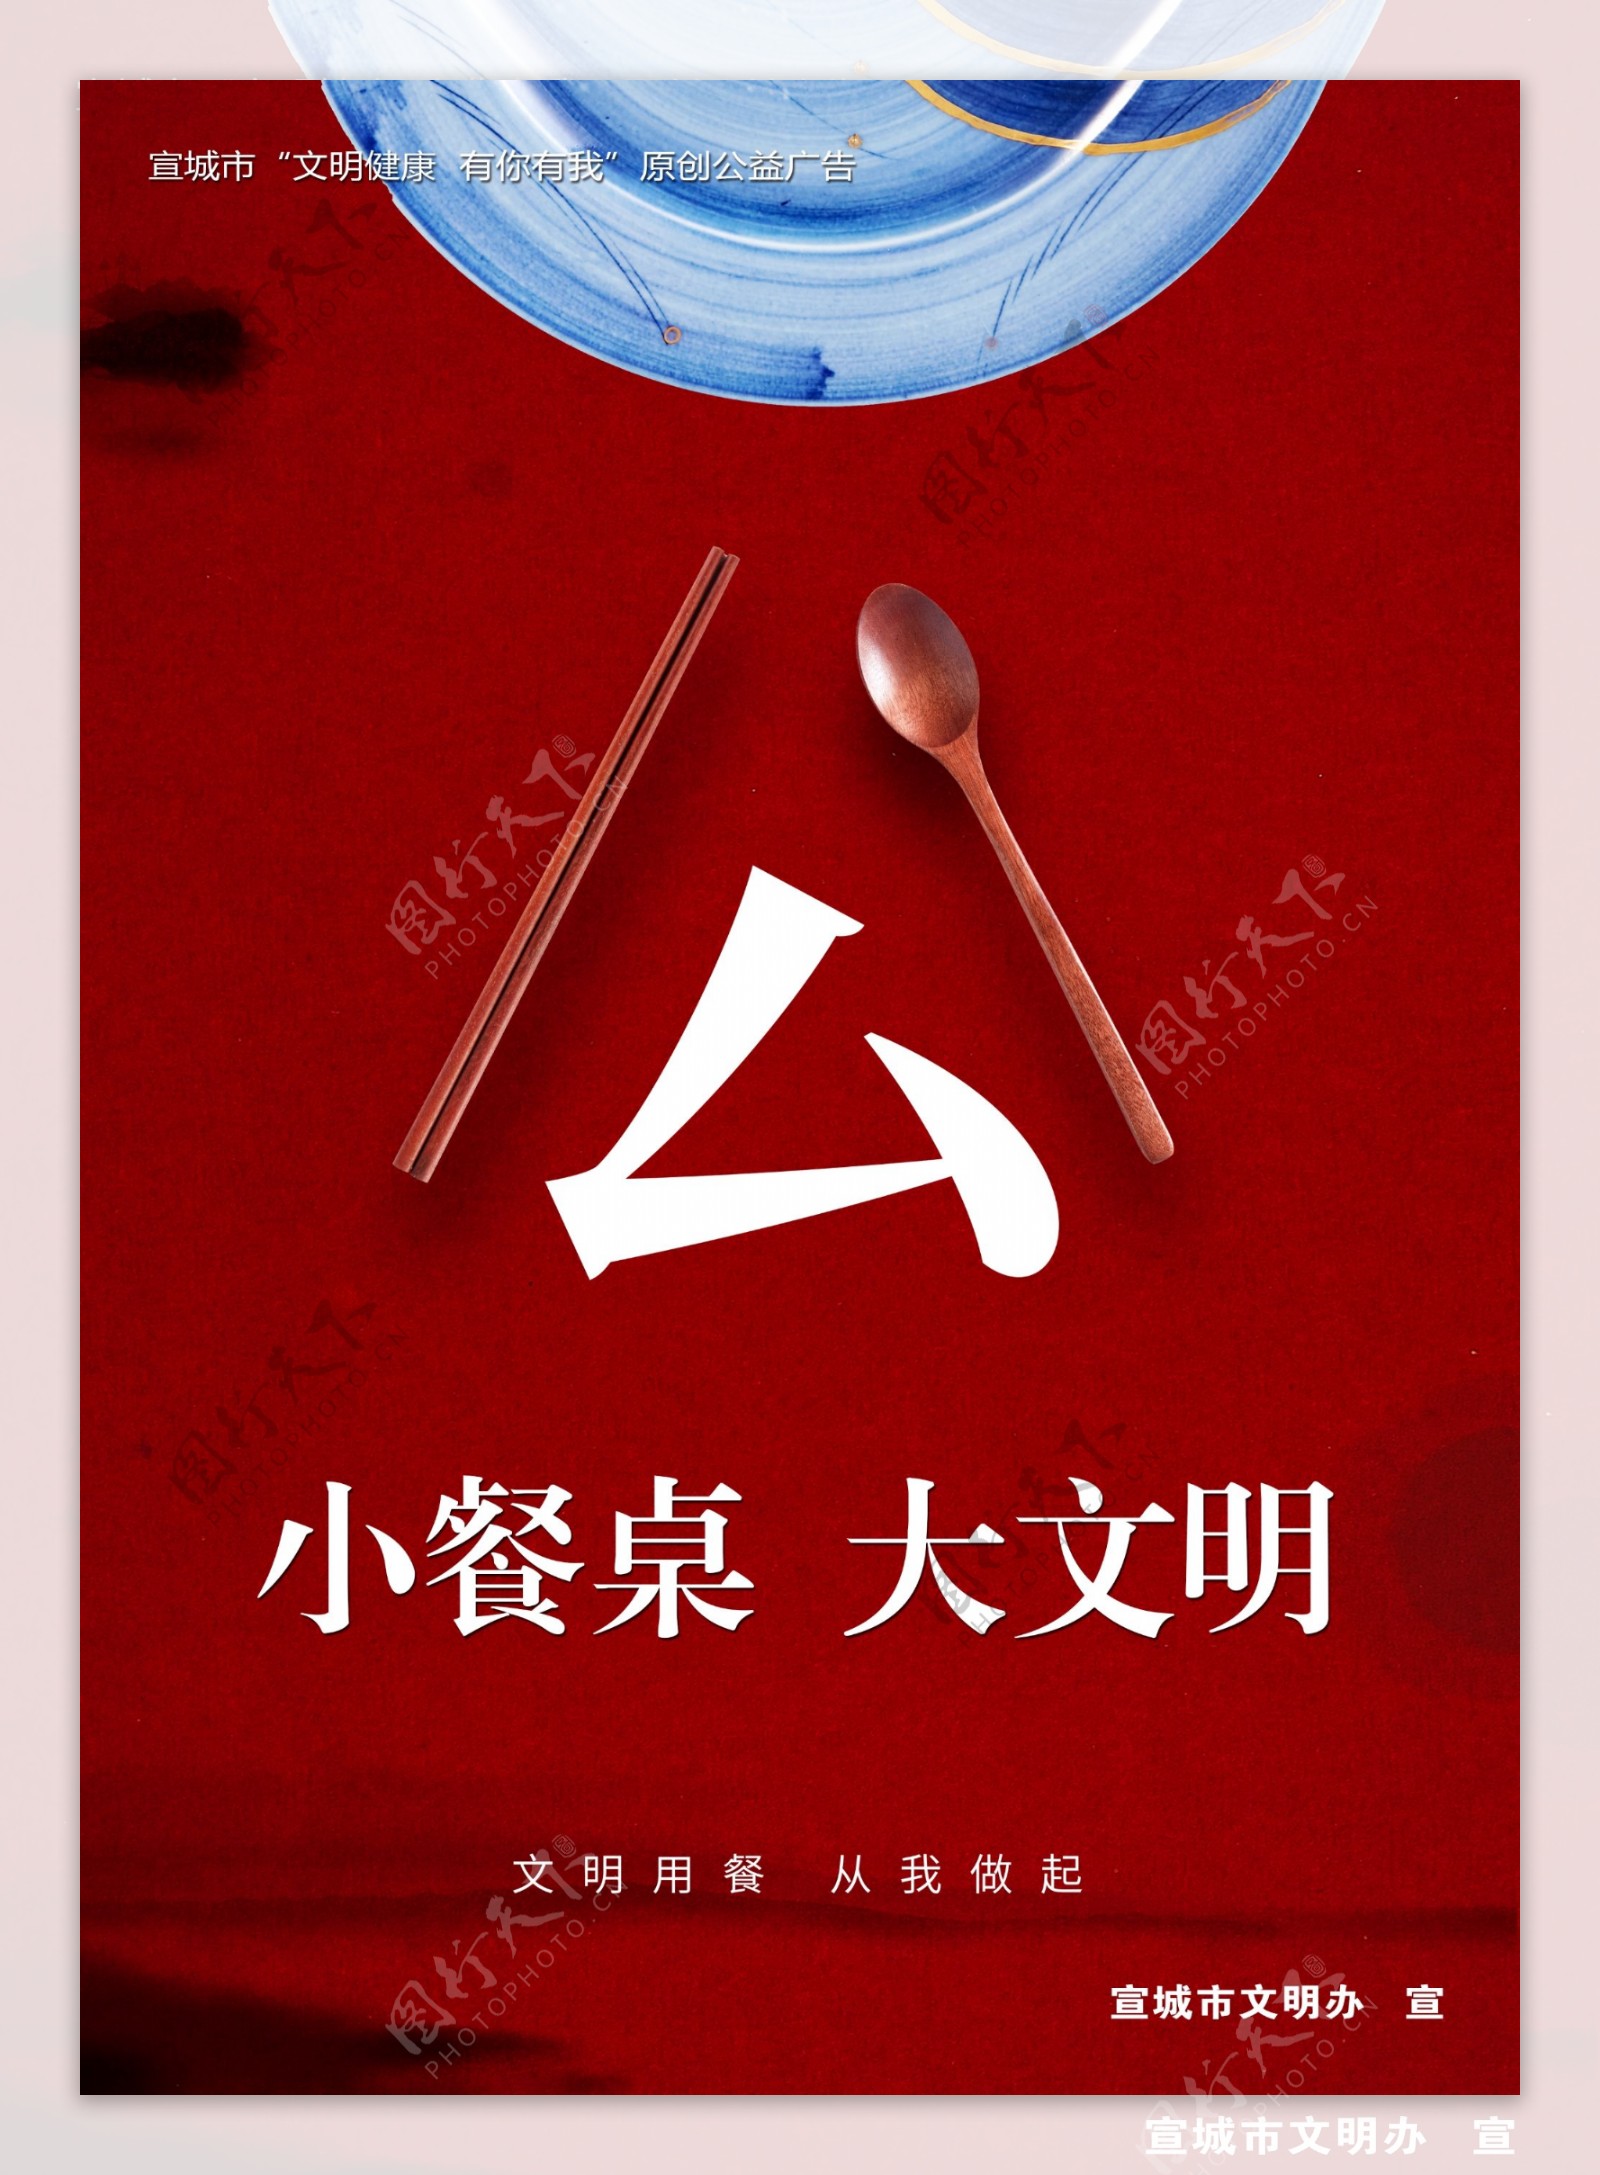 公勺公筷餐桌文明健康